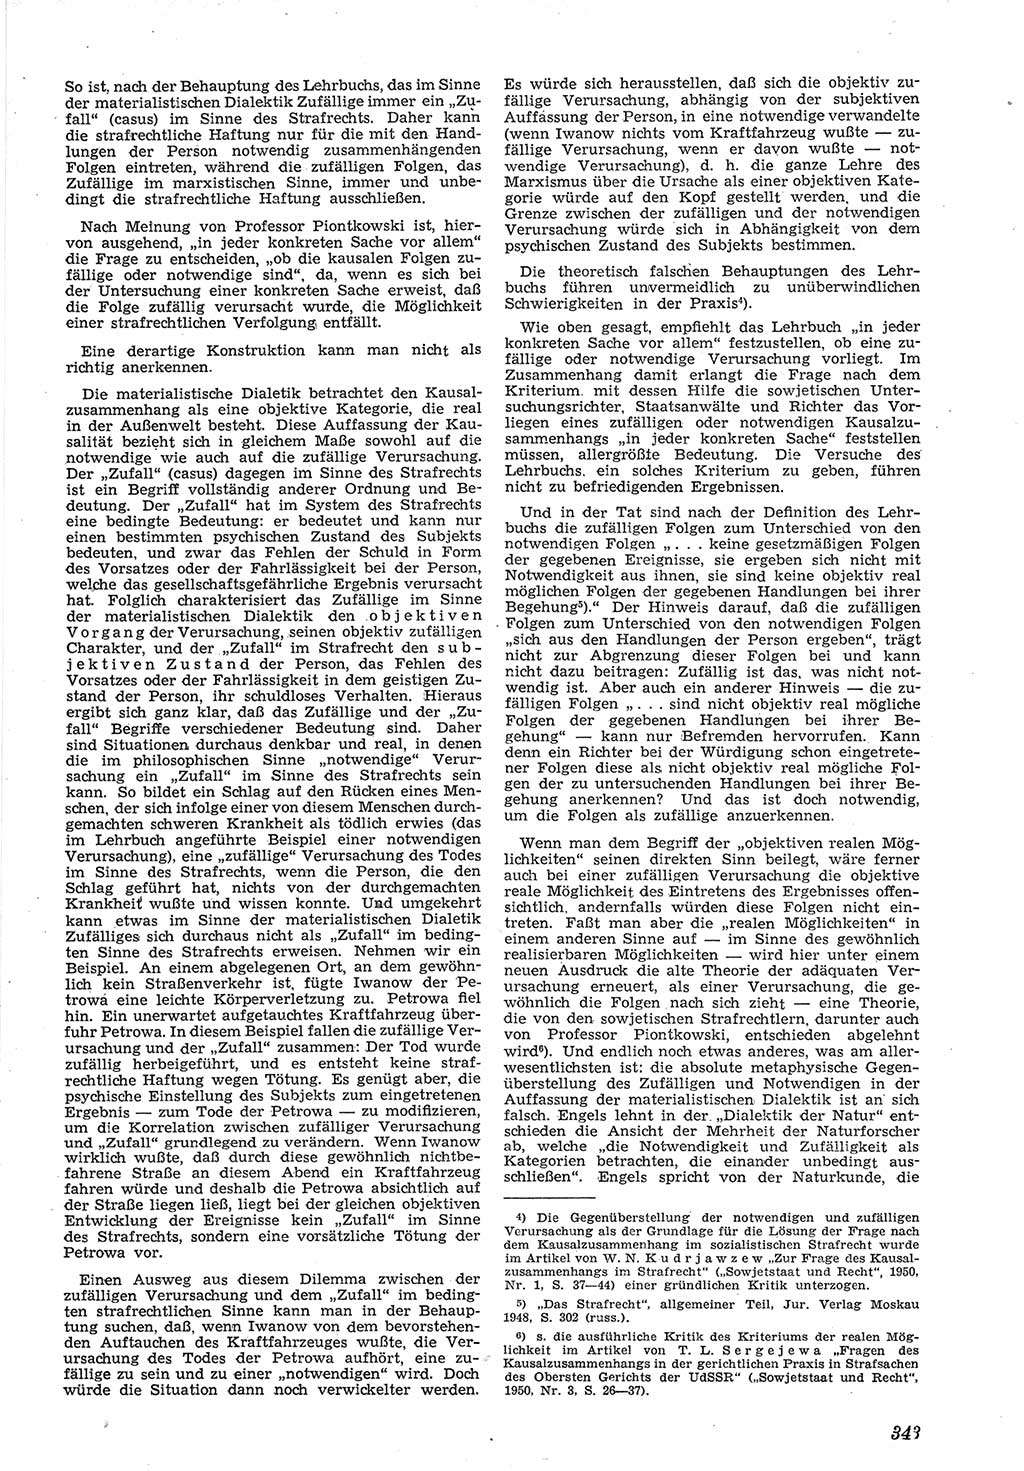 Neue Justiz (NJ), Zeitschrift für Recht und Rechtswissenschaft [Deutsche Demokratische Republik (DDR)], 5. Jahrgang 1951, Seite 343 (NJ DDR 1951, S. 343)